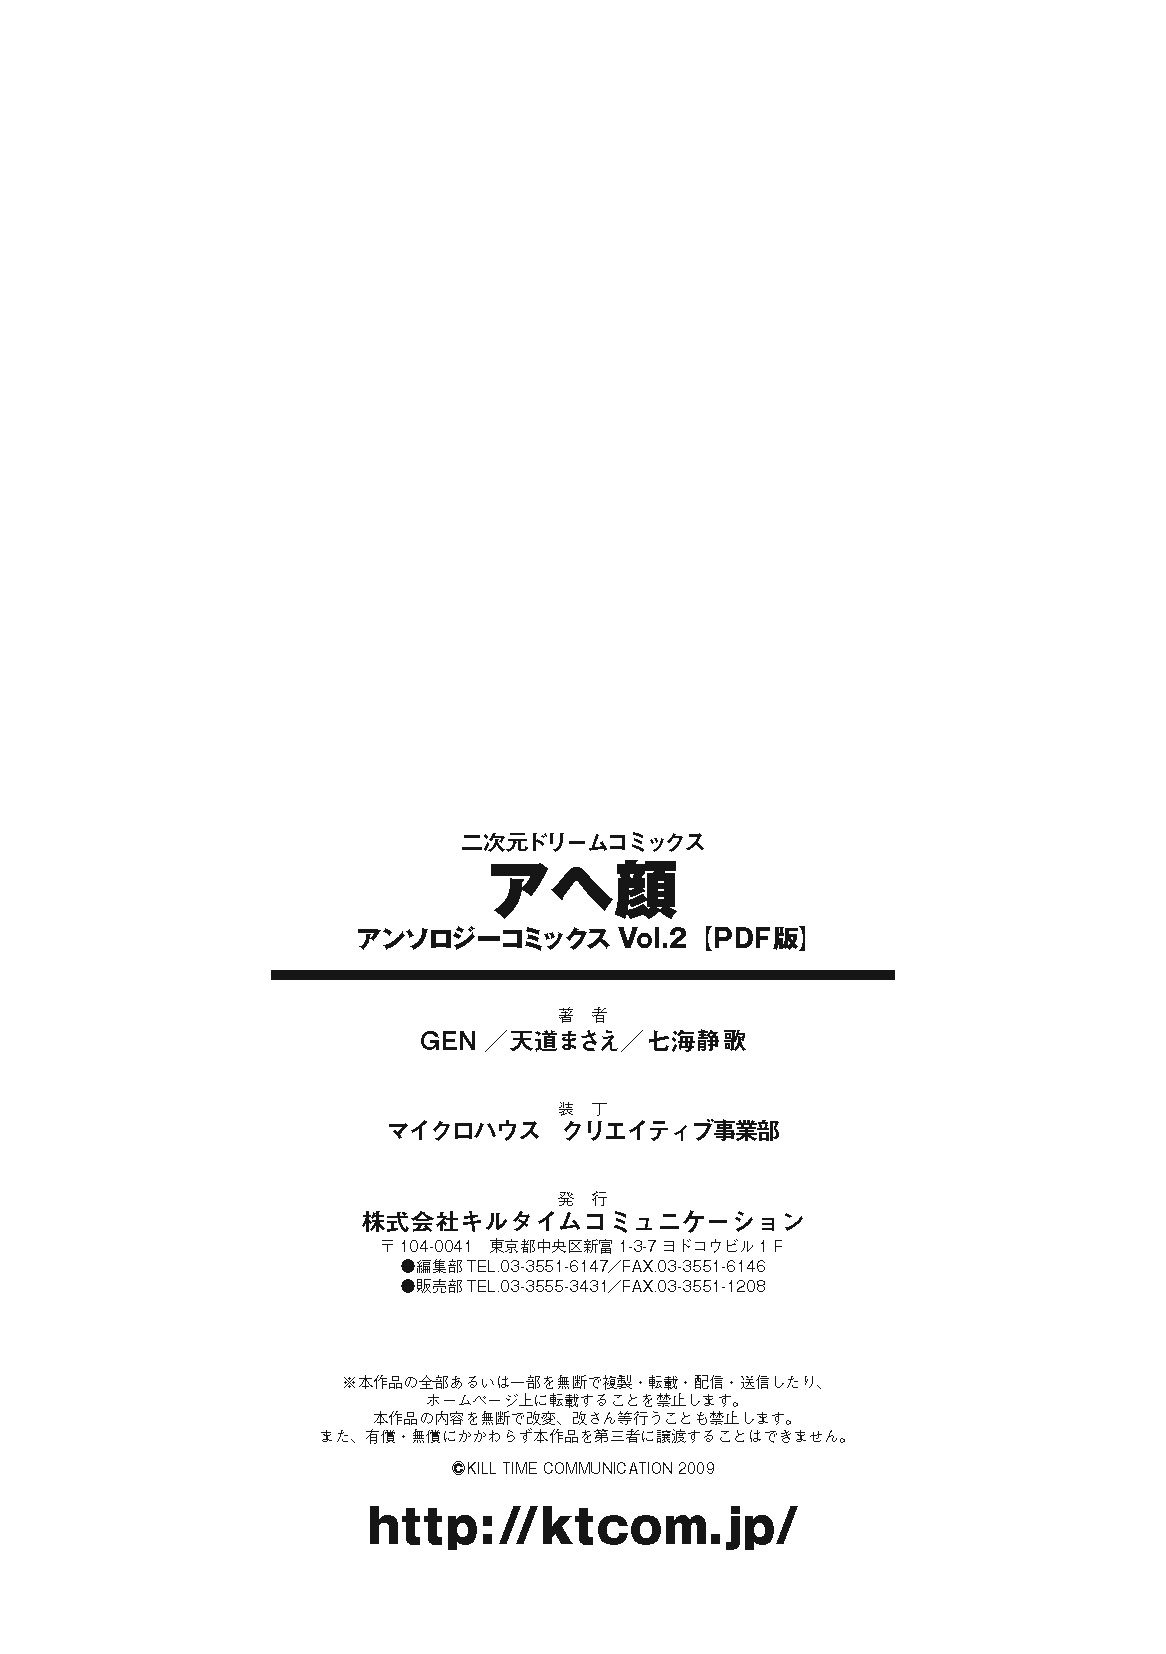 Acme Face Anthology Comics Vol.2 [キルタイムコミュニケーション]アヘ顔アンソロジーコミックスVol.2